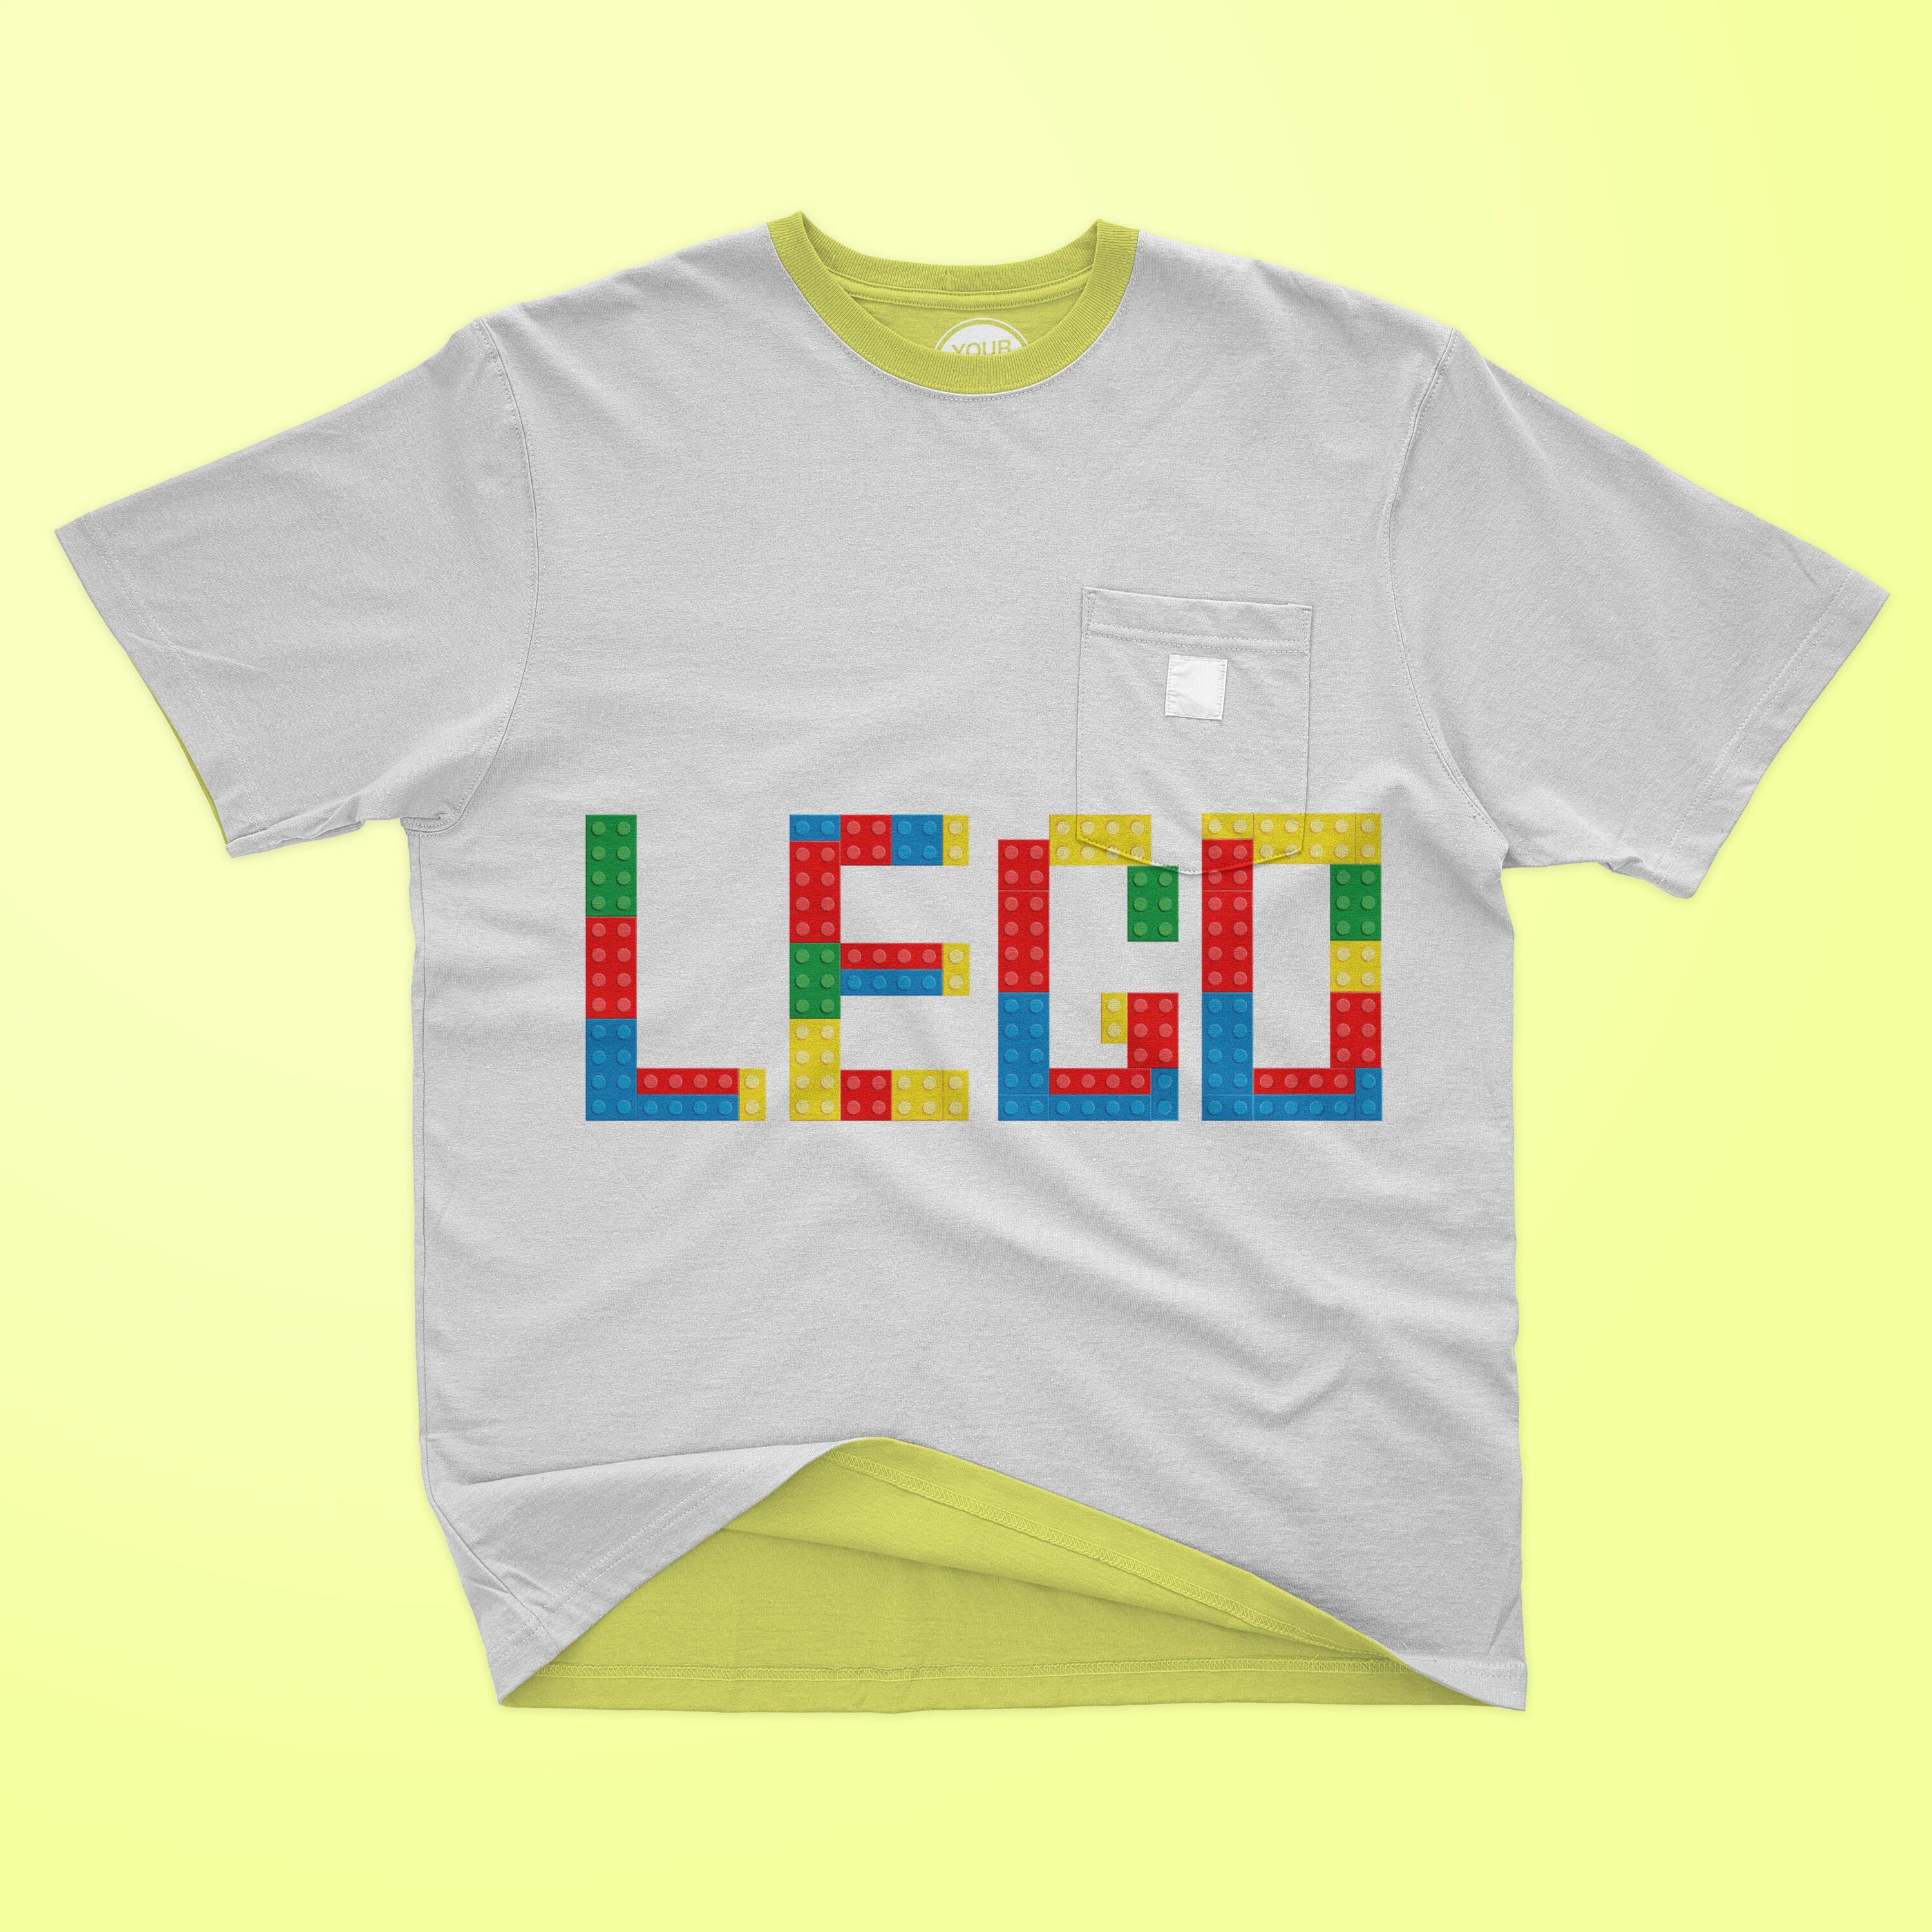 Colorful lego illustration for t-shirt design.